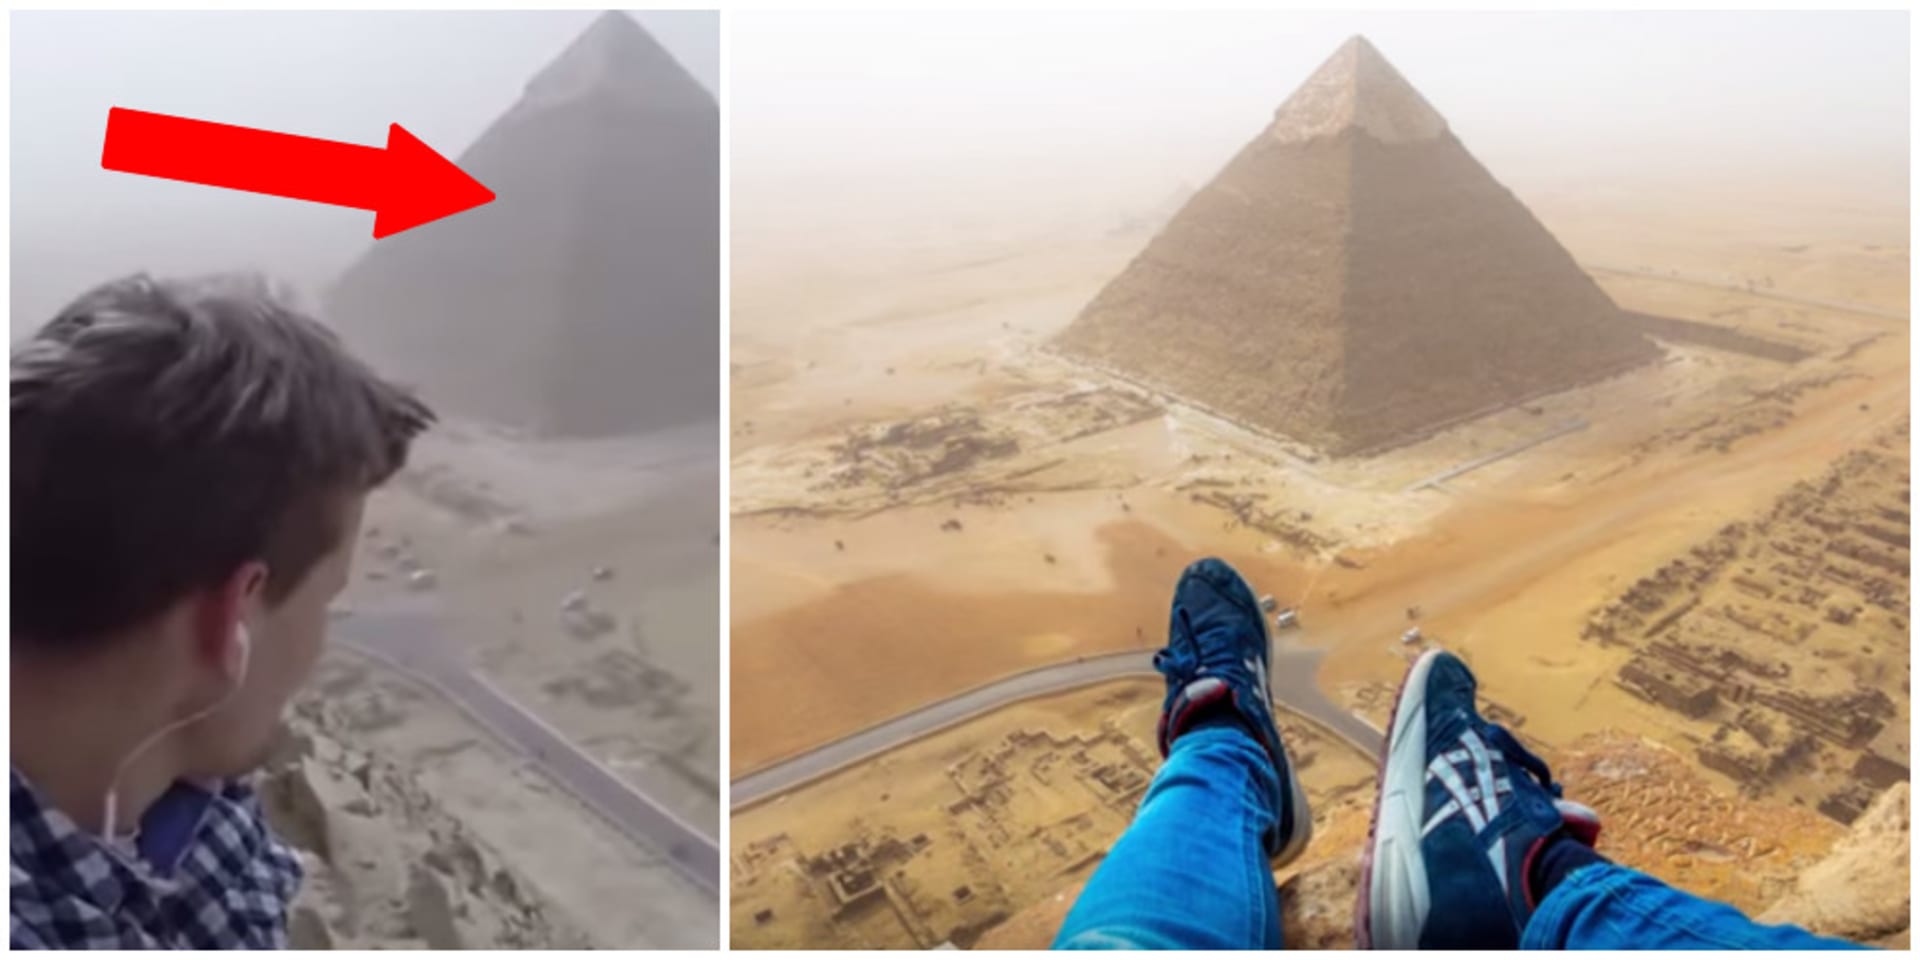 18letý mladík porušil všechny zákazy a vylezl na vrcholek pyramidy